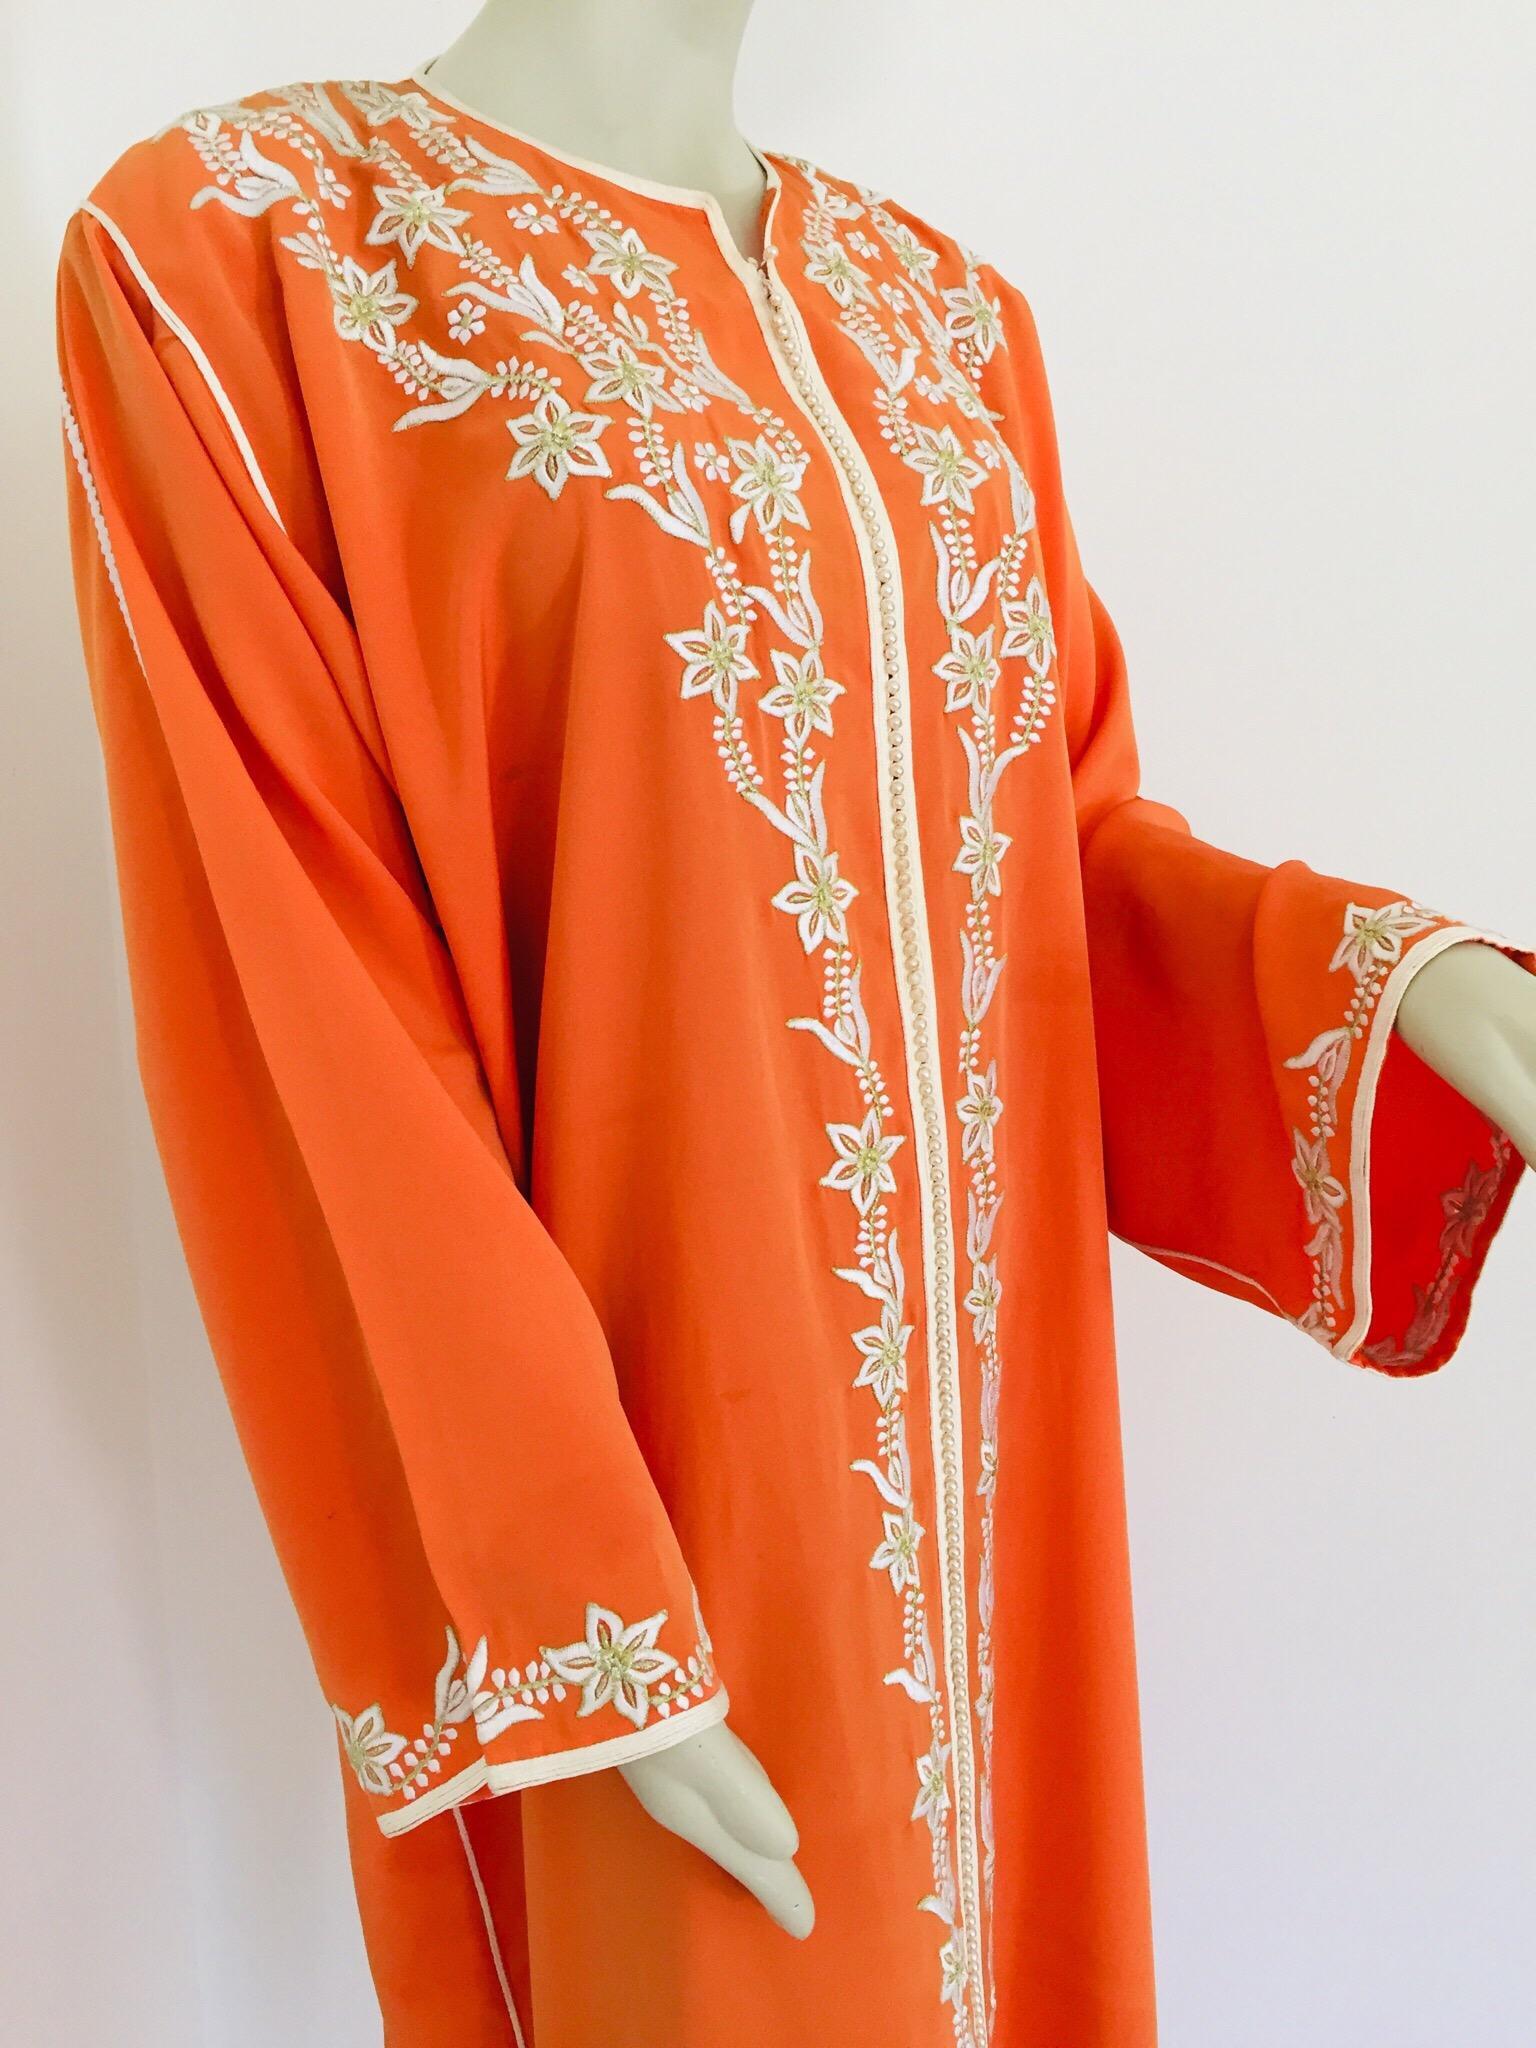 Marokkanischer Kaftan in orangefarbener Farbe, bestickt mit Goldbesatz,
ca. 1970er Jahre.
Der lange Kaftanbesatz des langen Maxikleids ist vollständig von Hand bestickt und mit Perlen verziert.
Einzigartiges marokkanisches Abendkleid aus dem Nahen